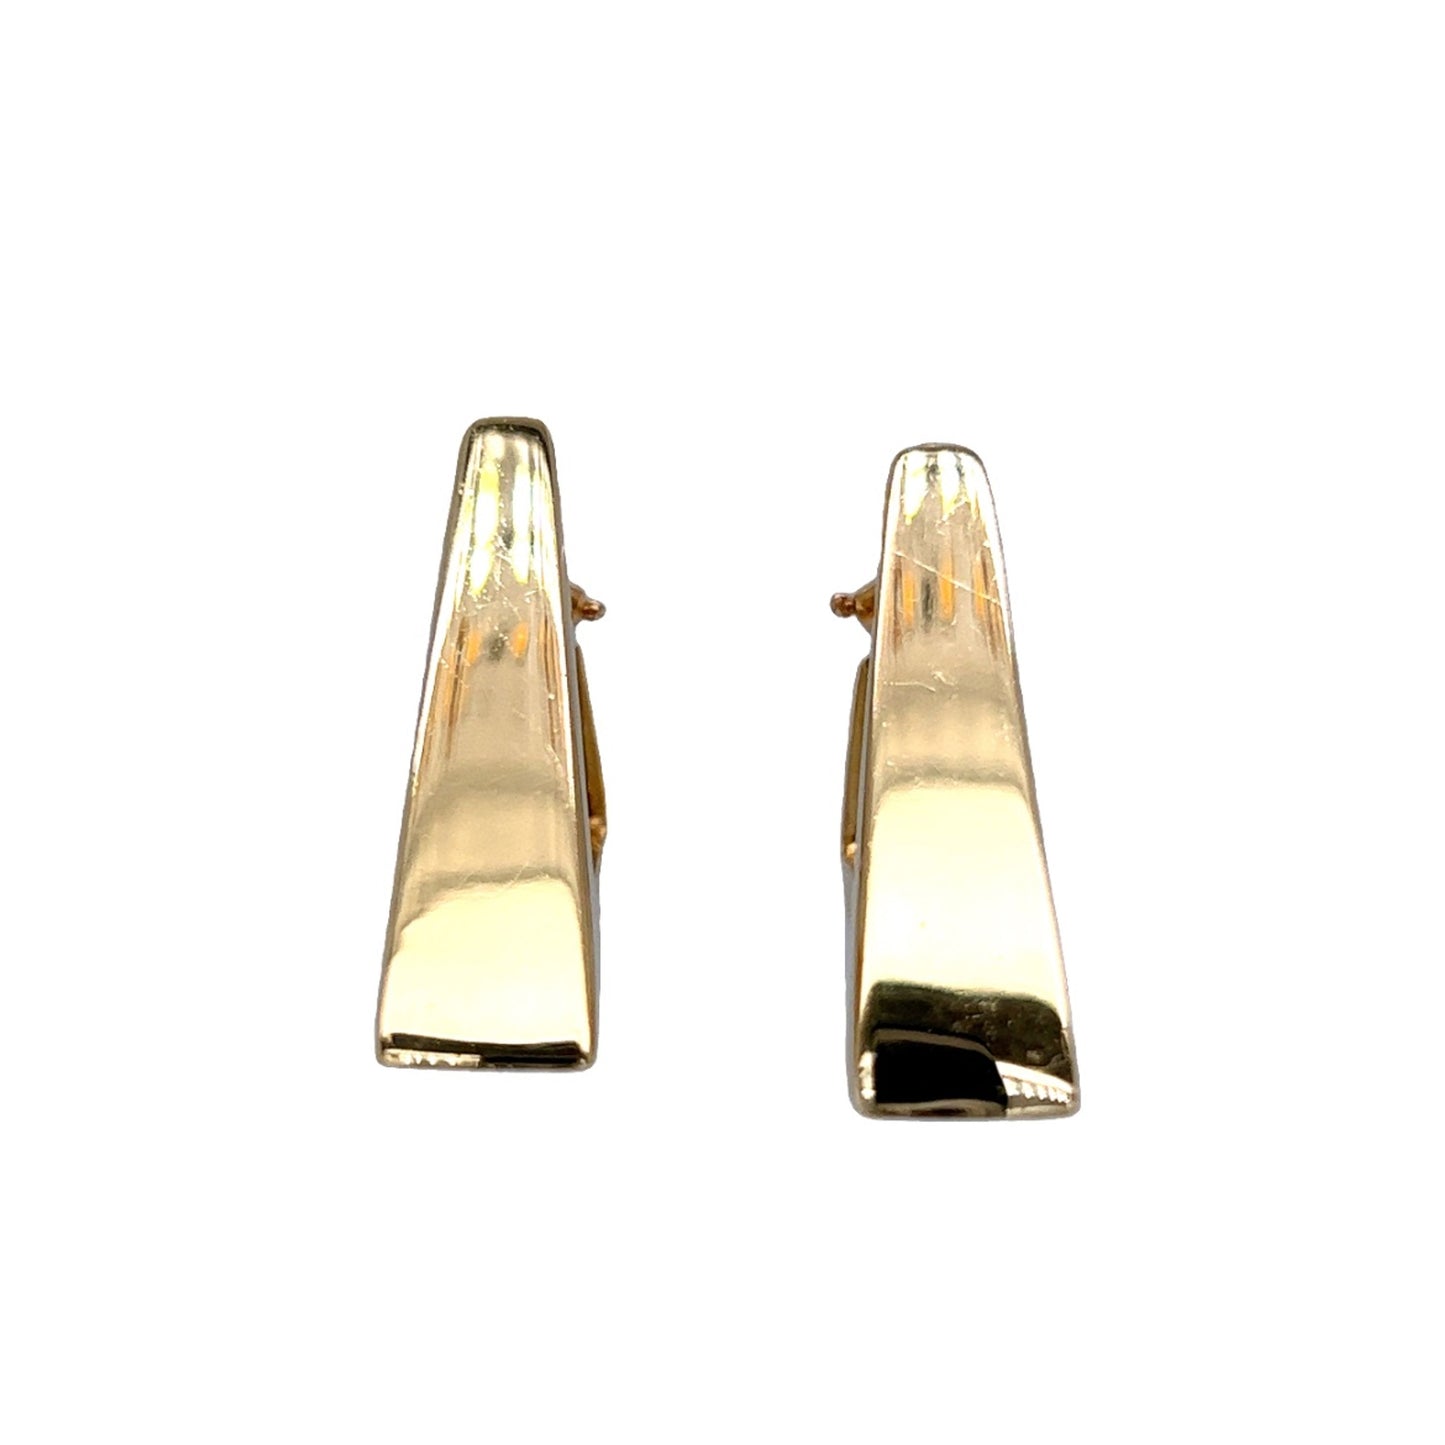 Modern Triangle Earrings in 14k Yellow Gold